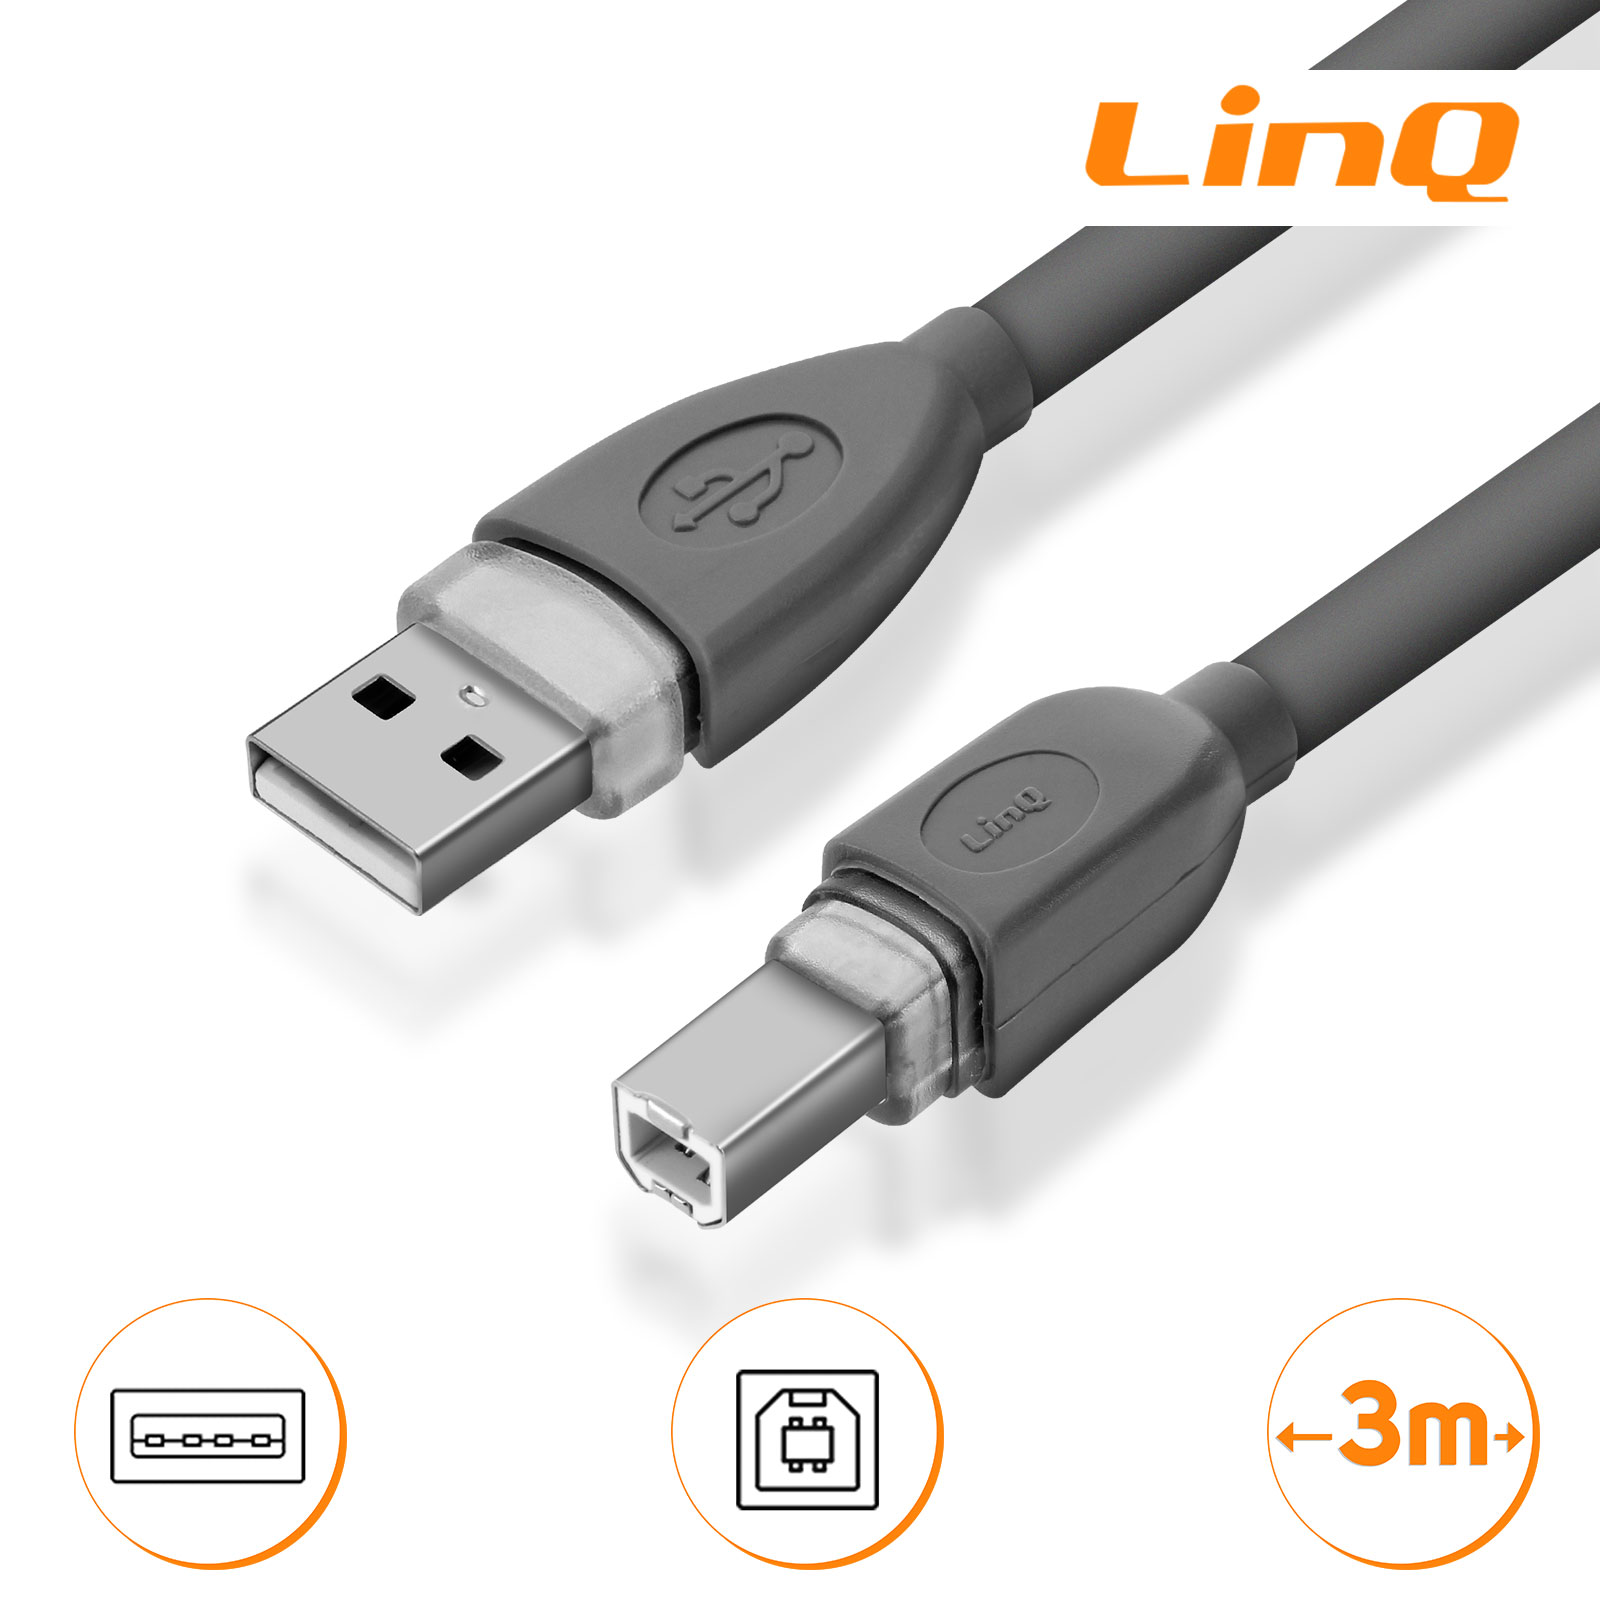 Câble USB 2.0 Type A Mâle vers USB 2.0 Type B Mâle, 3m LinQ - Gris pour  Imprimante, Disque dur, appareil photo - Français